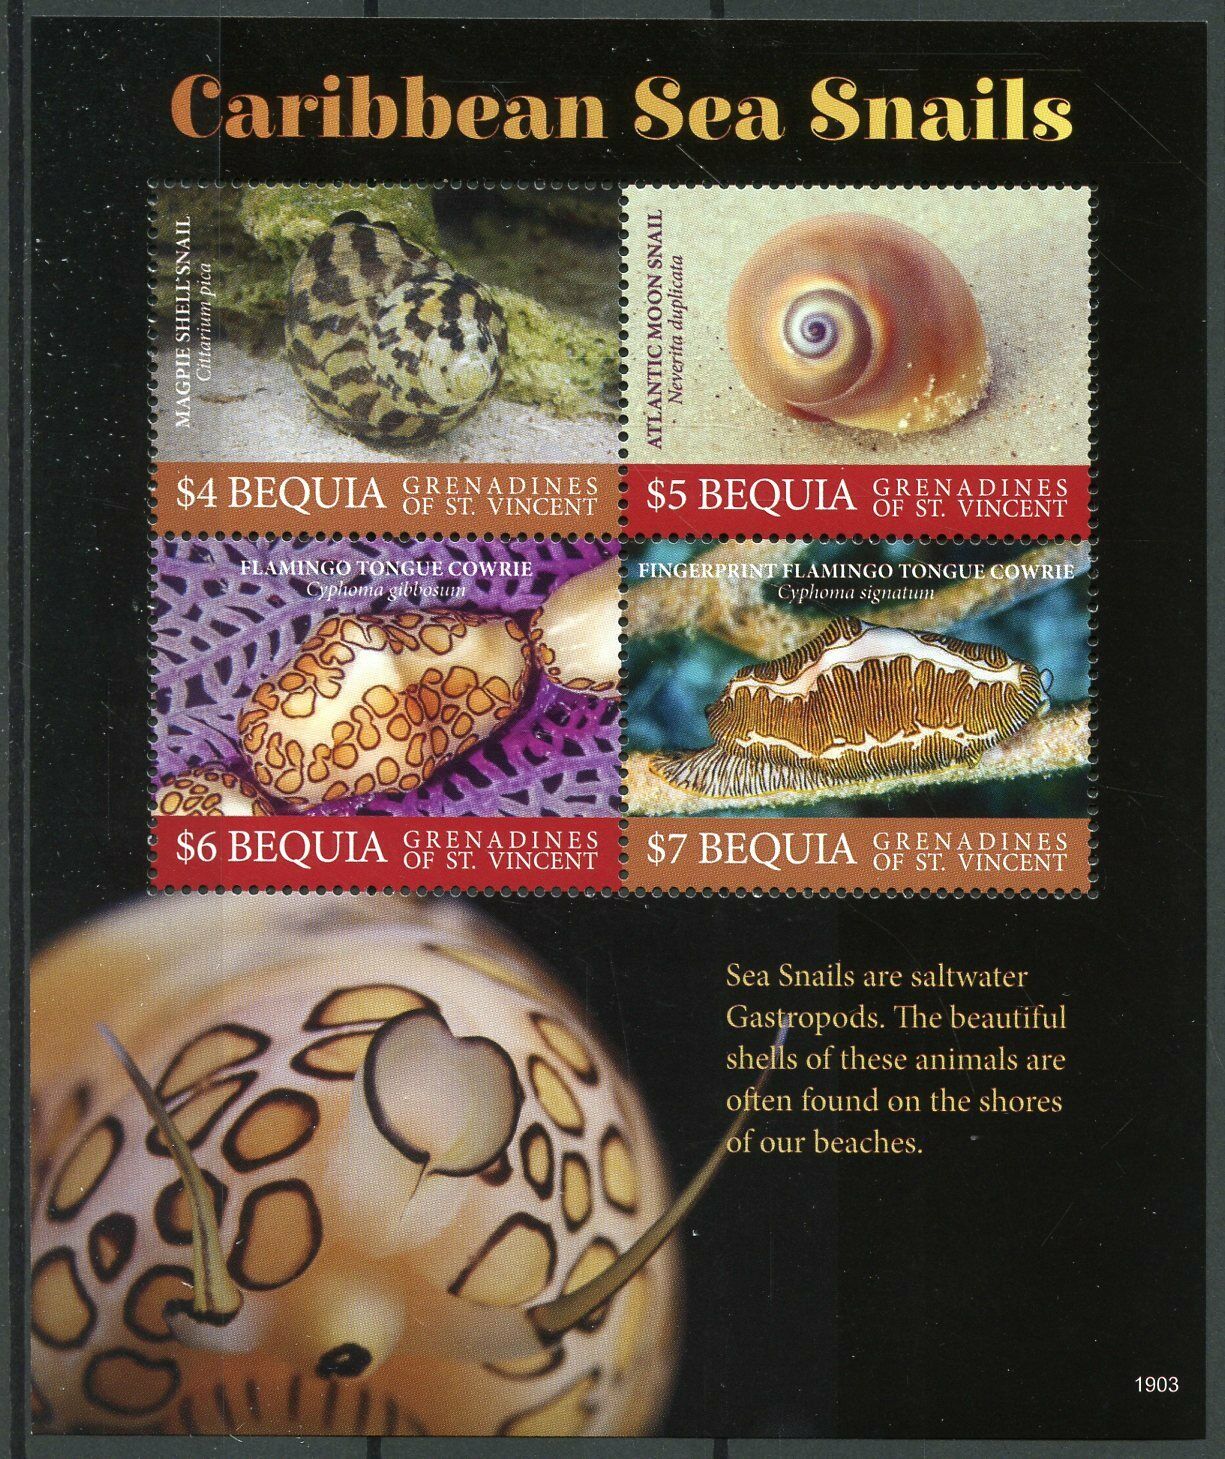 Bequia Grenadines St Vincent 2019 MNH Caribbean Sea Snails 4v M/S Marine Stamps